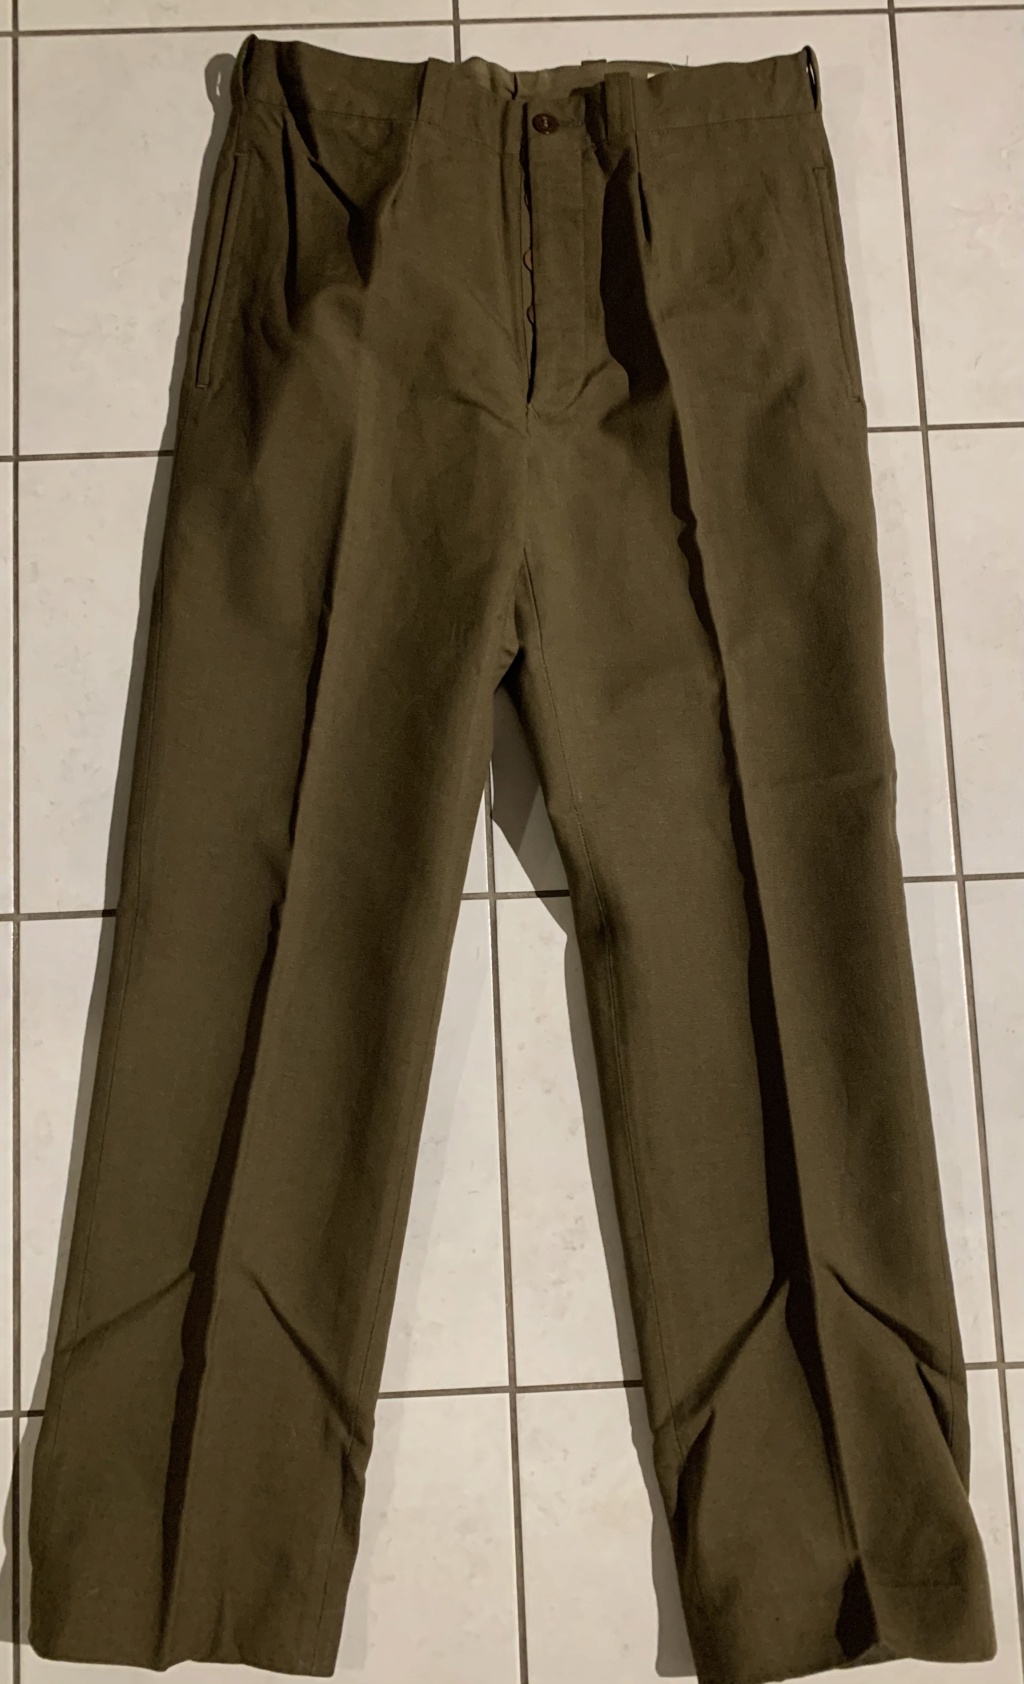 Pantalons militaire ? Ff8dca10